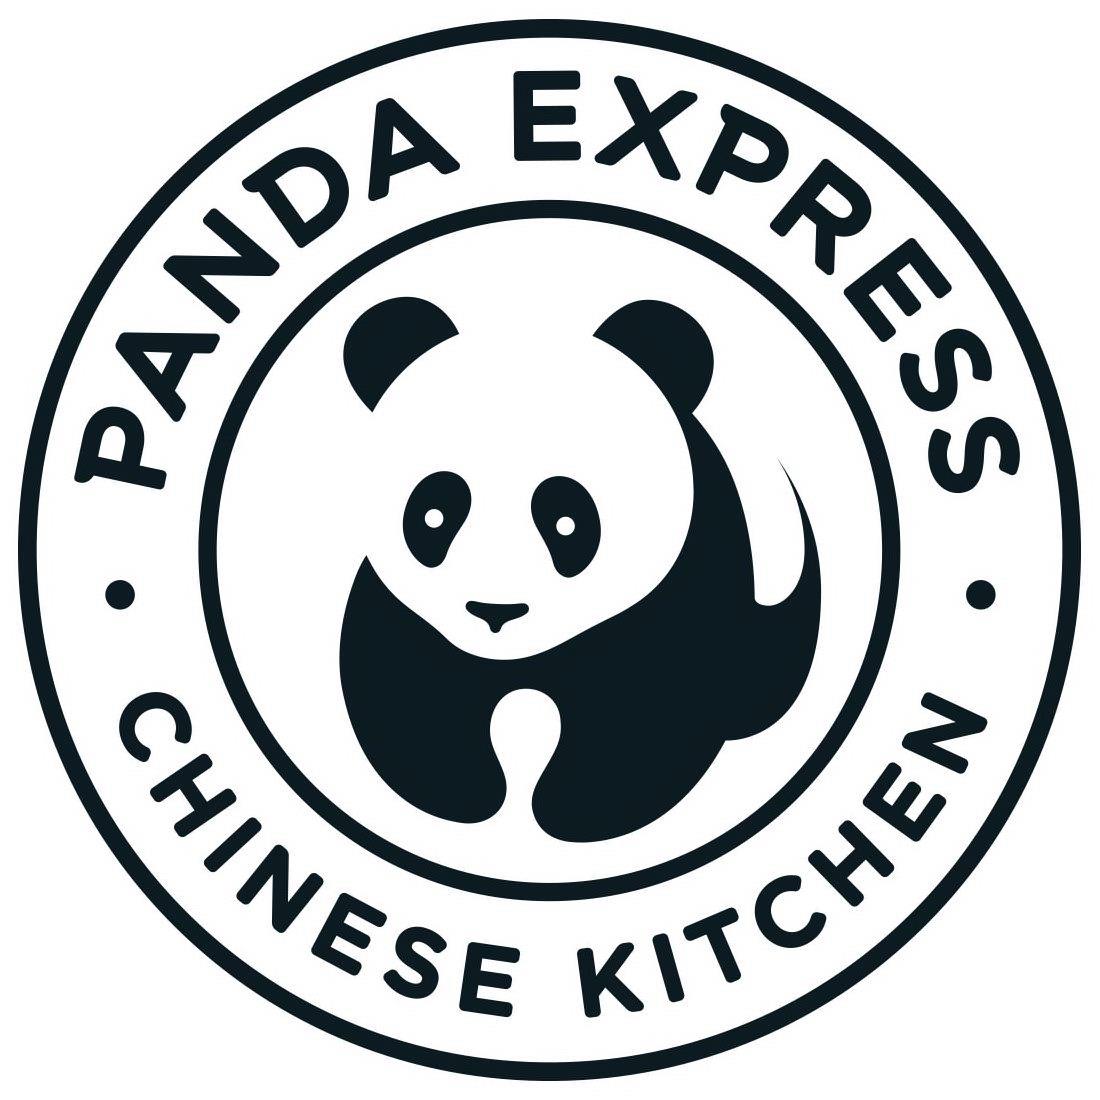 PANDA EXPRESS CHINESE KITCHEN